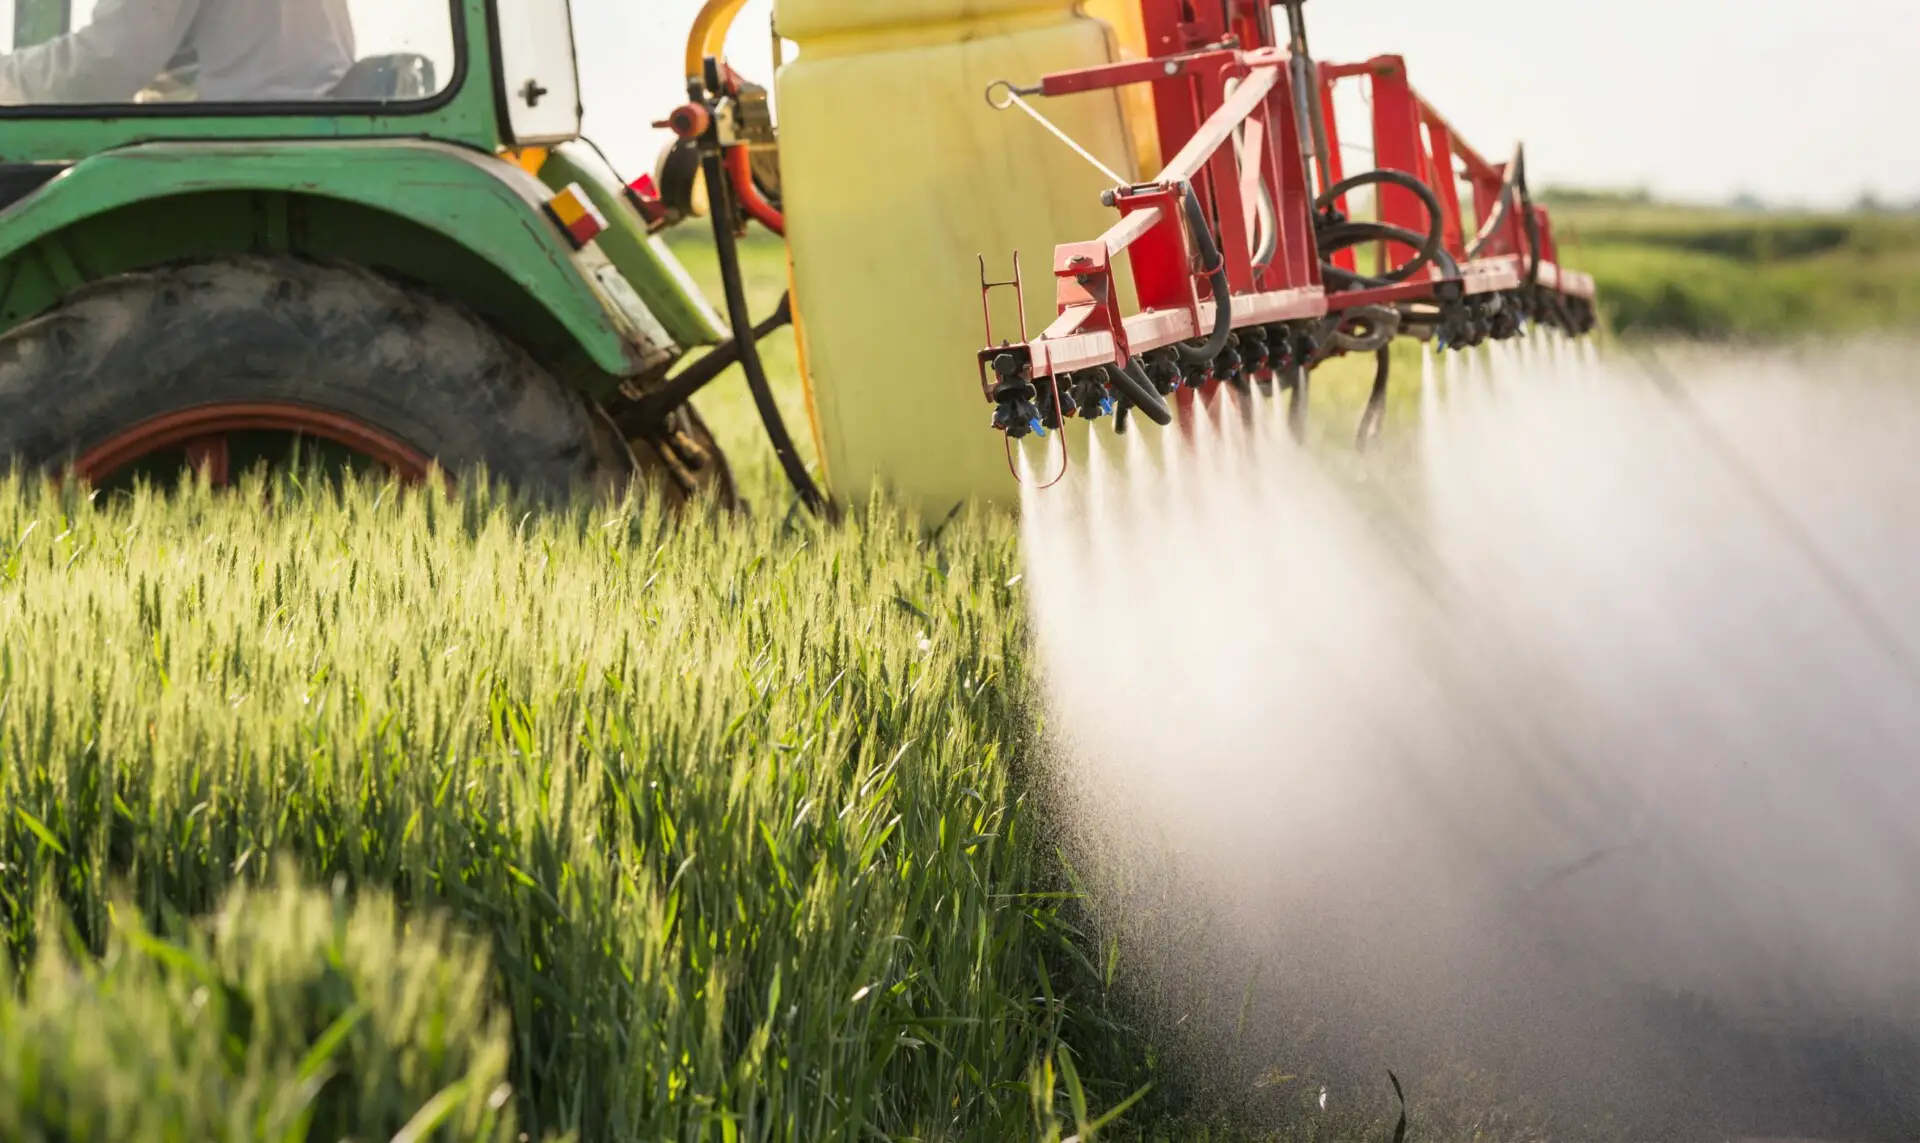 Sind Pestizide umweltschädlich? (4 wichtige Fakten)